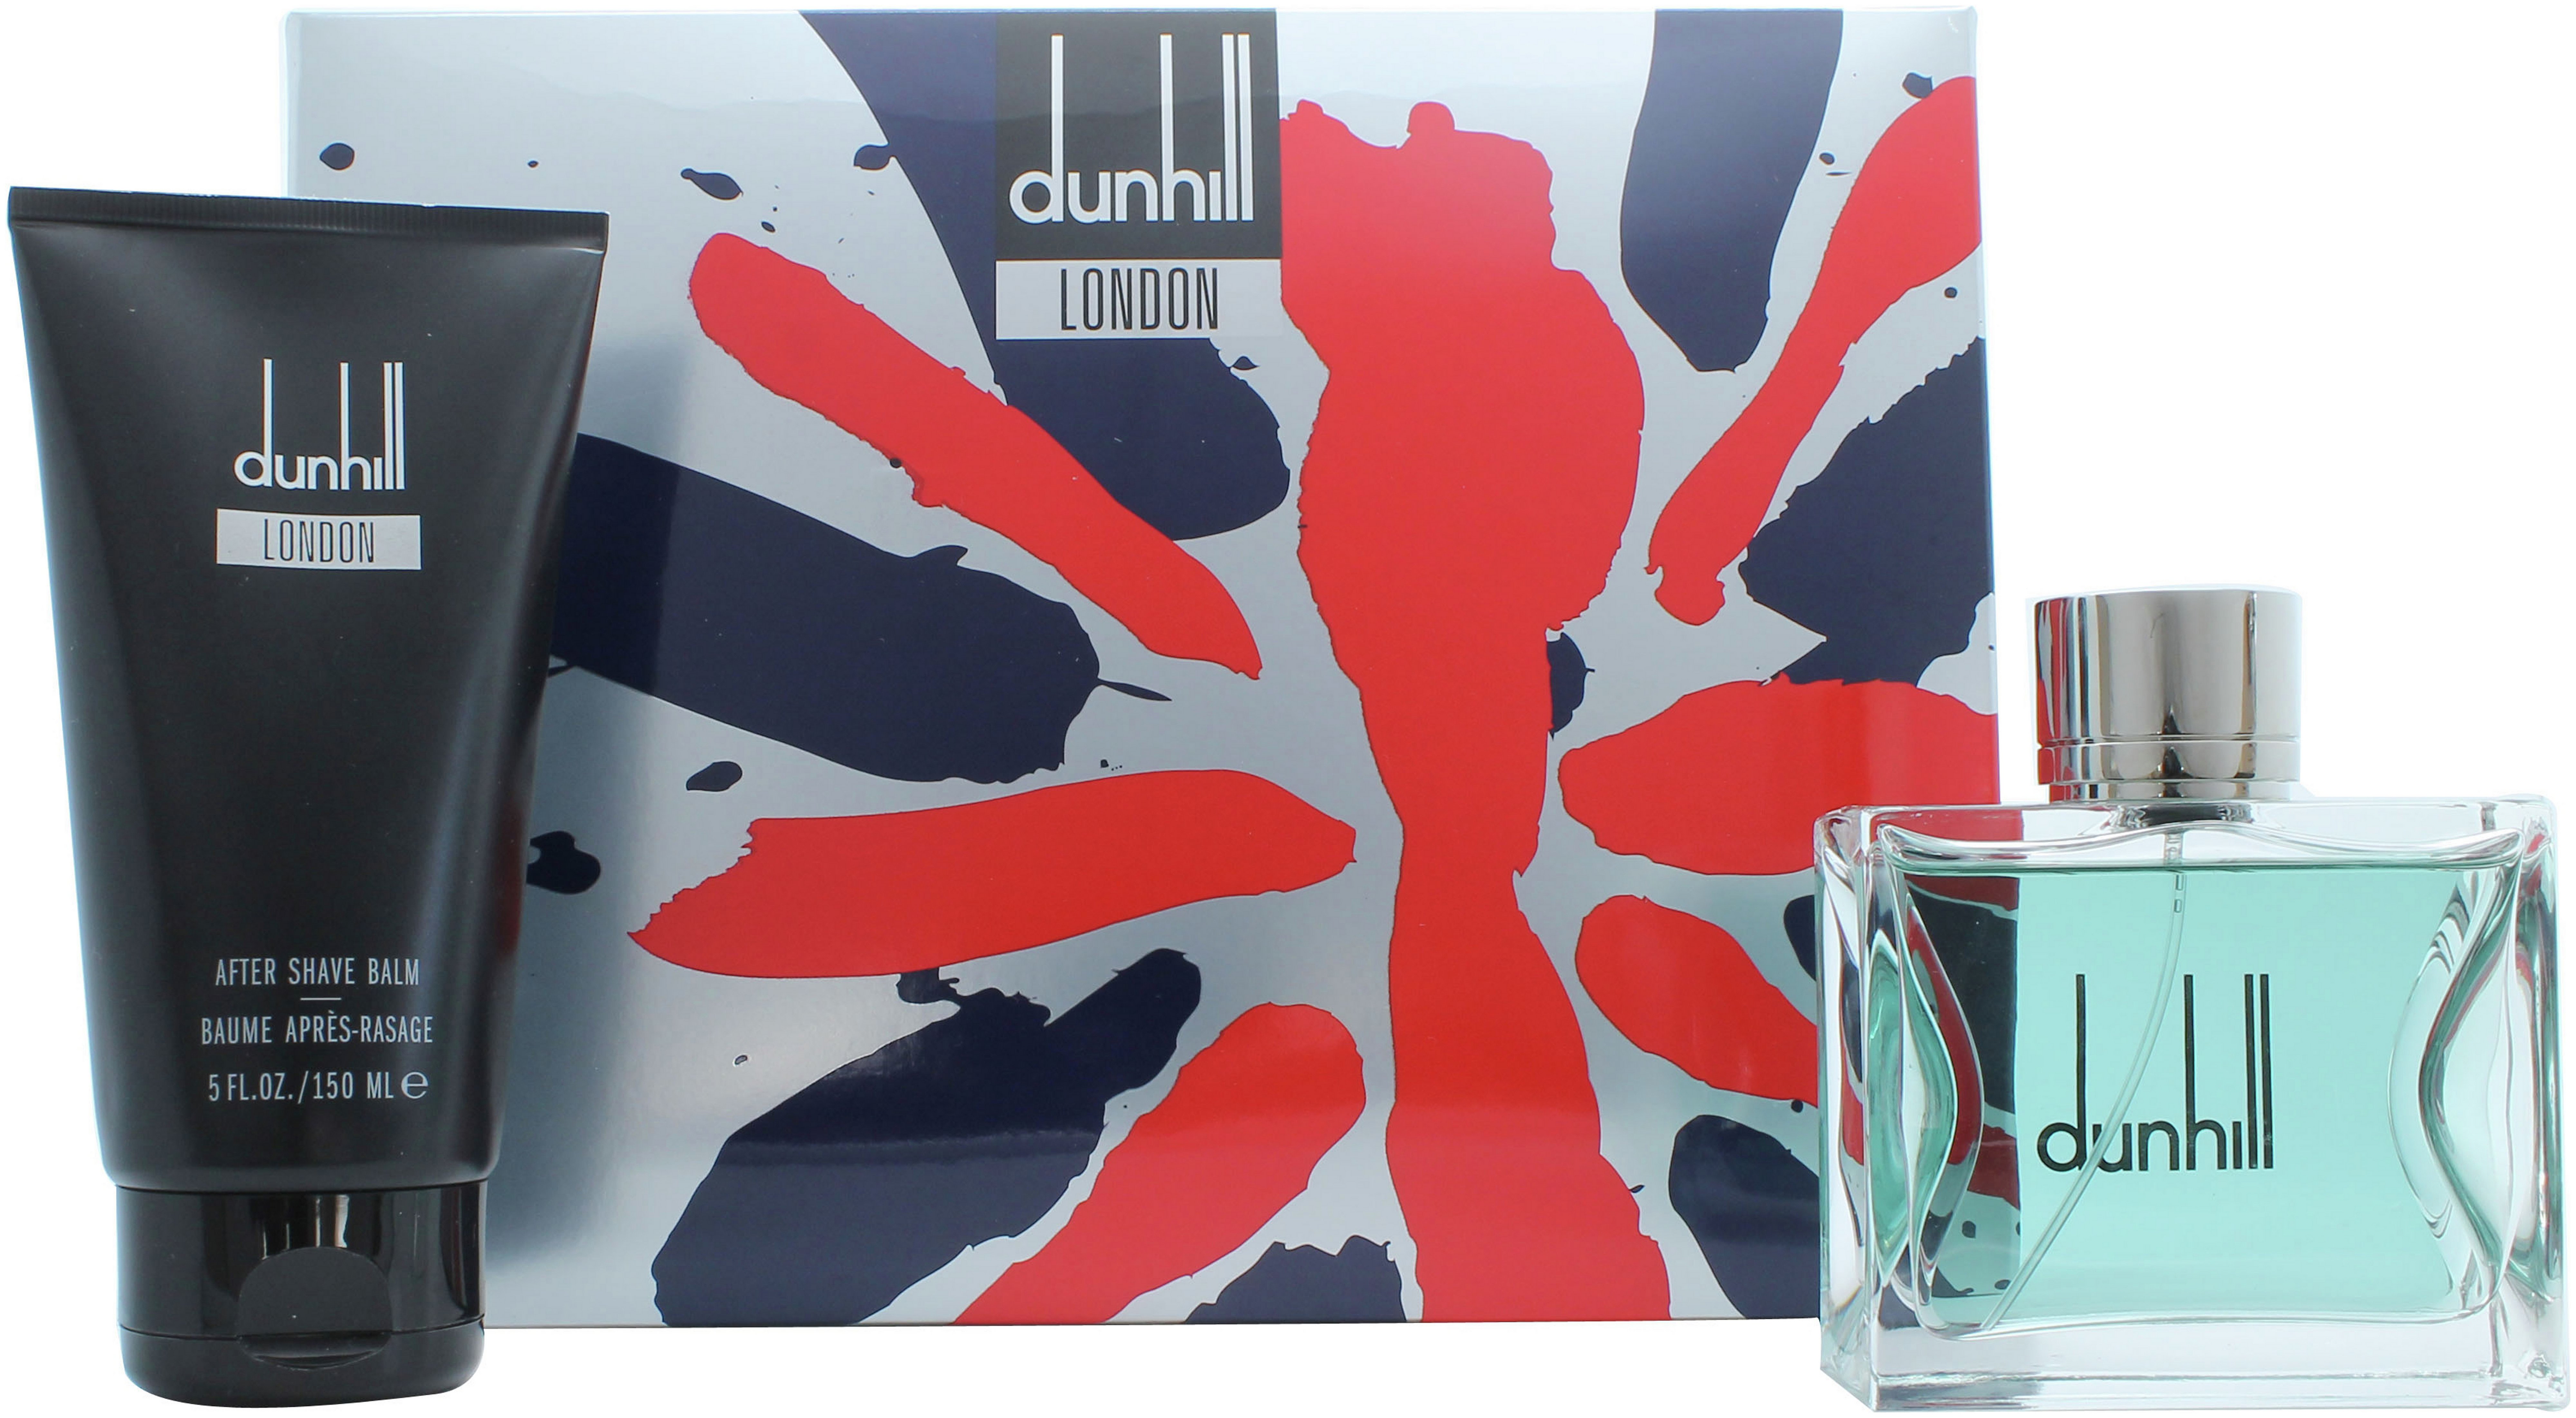 Dunhill London 100ml Eau de Toilette Spray Gift Set